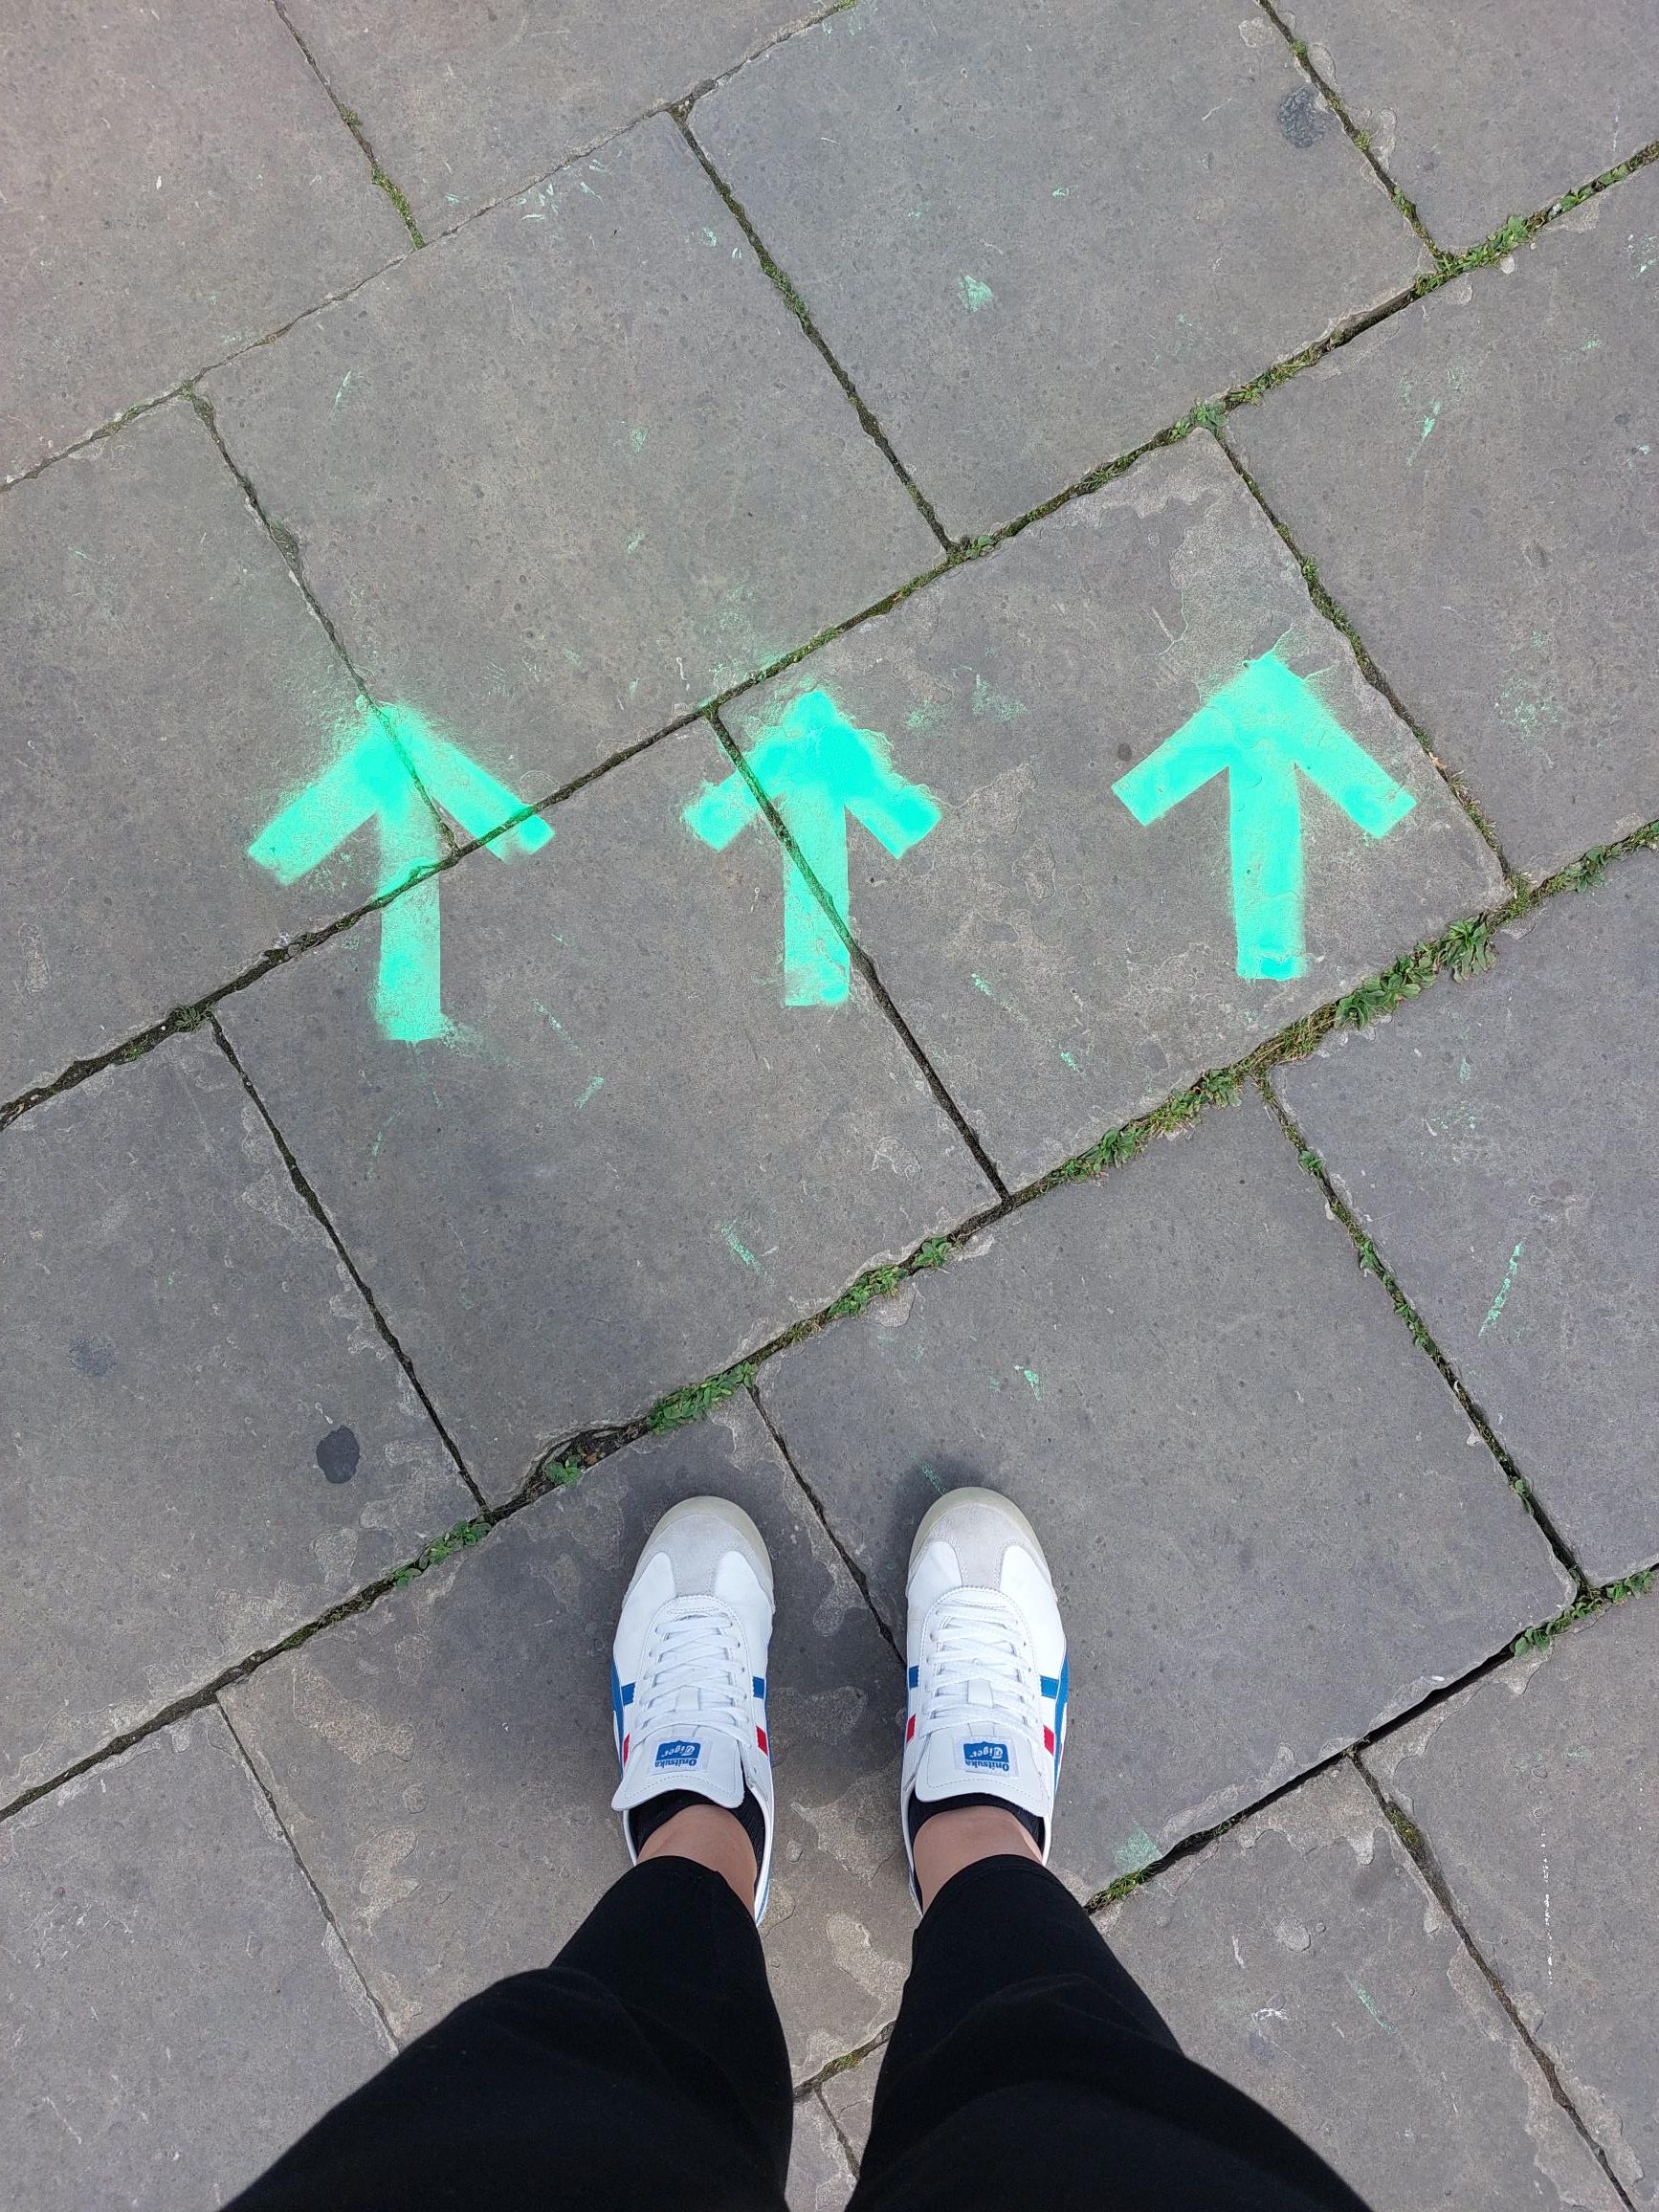 Zu sehen sind drei grüne Pfeile, die auf den Asphalt gezeichnet wurden. Entstanden ist das Bild im Rahmen des Veranstaltungstages "You promised me a city" in Hannover.